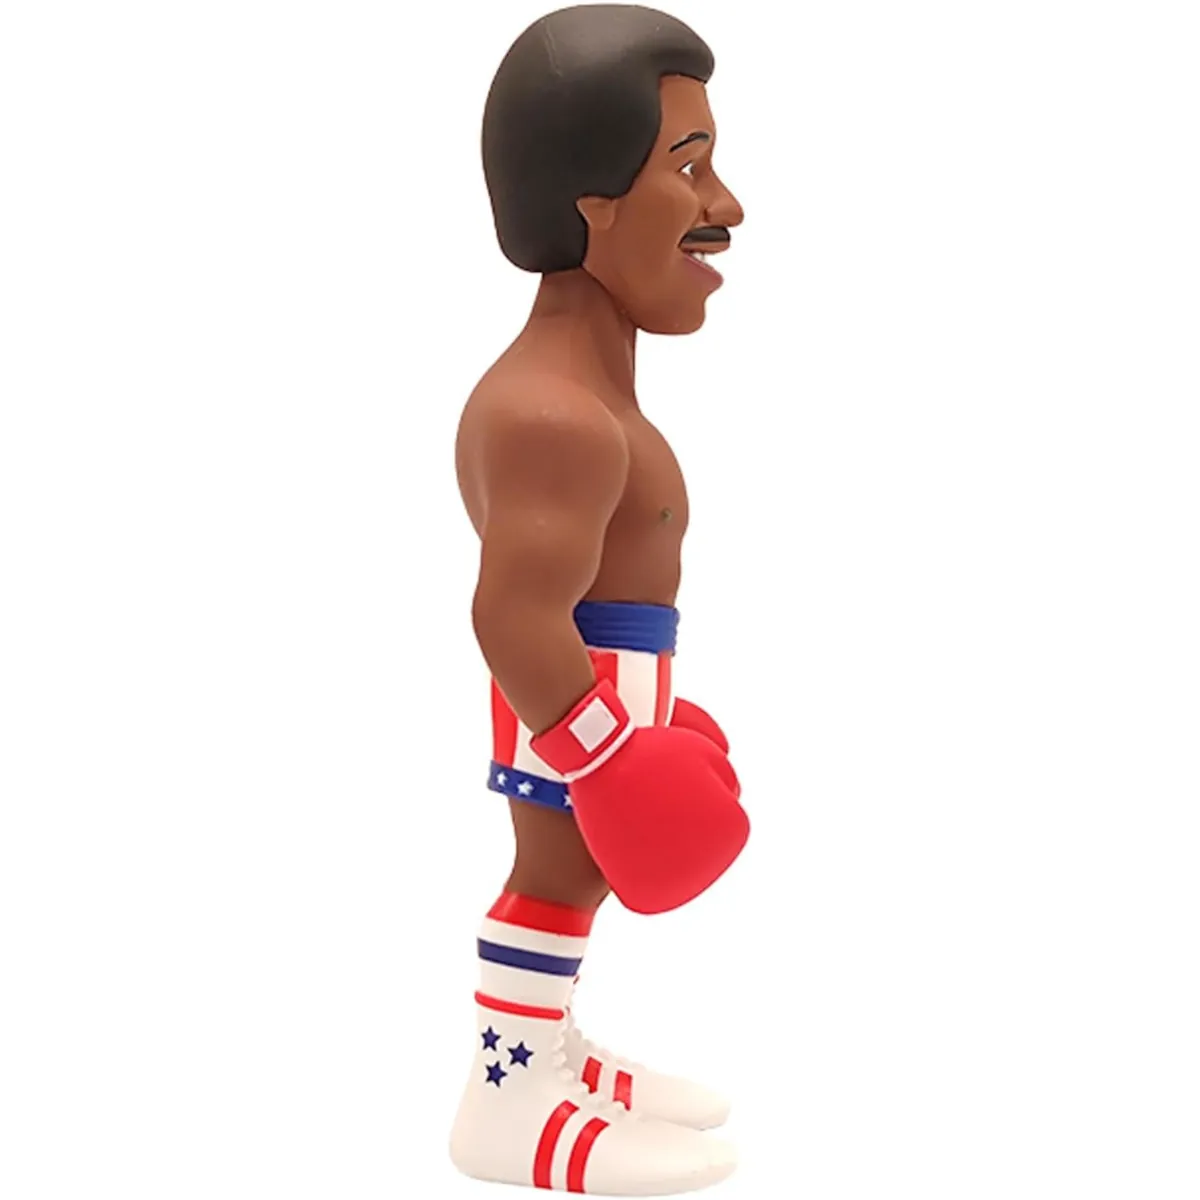 Apollo Creed (Rocky) 12cm MINIX Collectable Figure - Cutouts & Collectables